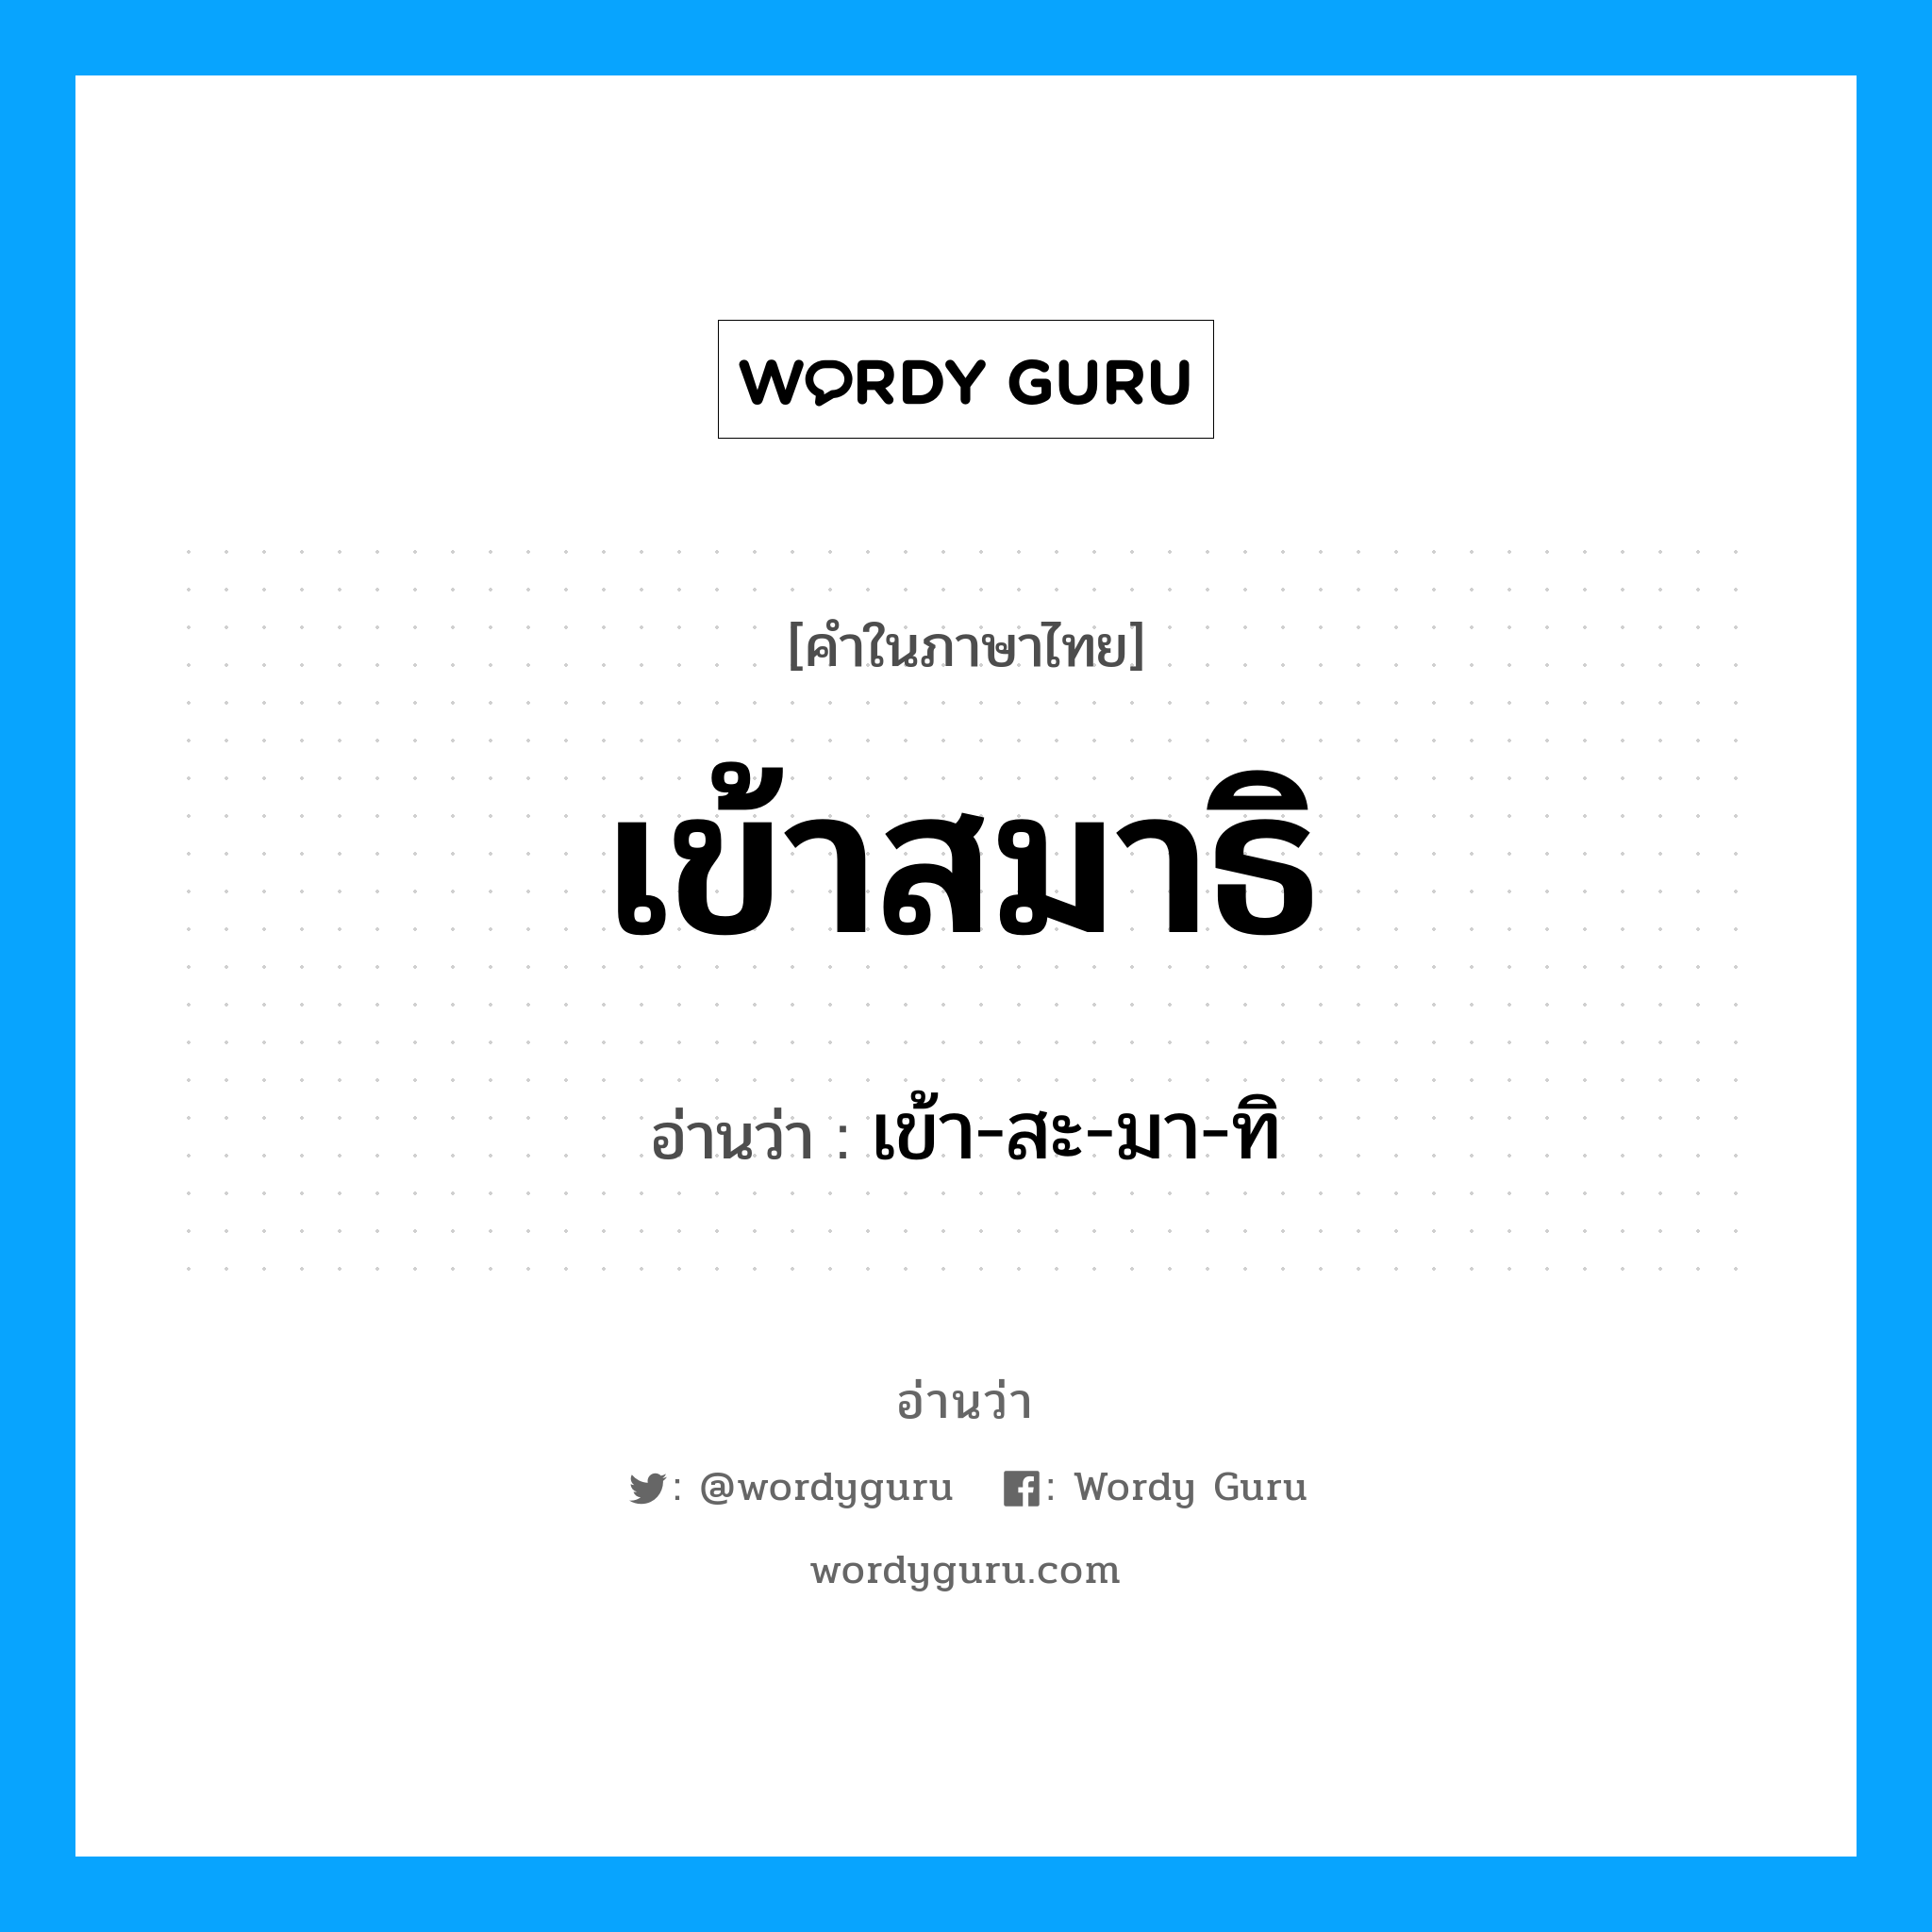 เข้า-สะ-มา-ทิ เป็นคำอ่านของคำไหน?, คำในภาษาไทย เข้า-สะ-มา-ทิ อ่านว่า เข้าสมาธิ